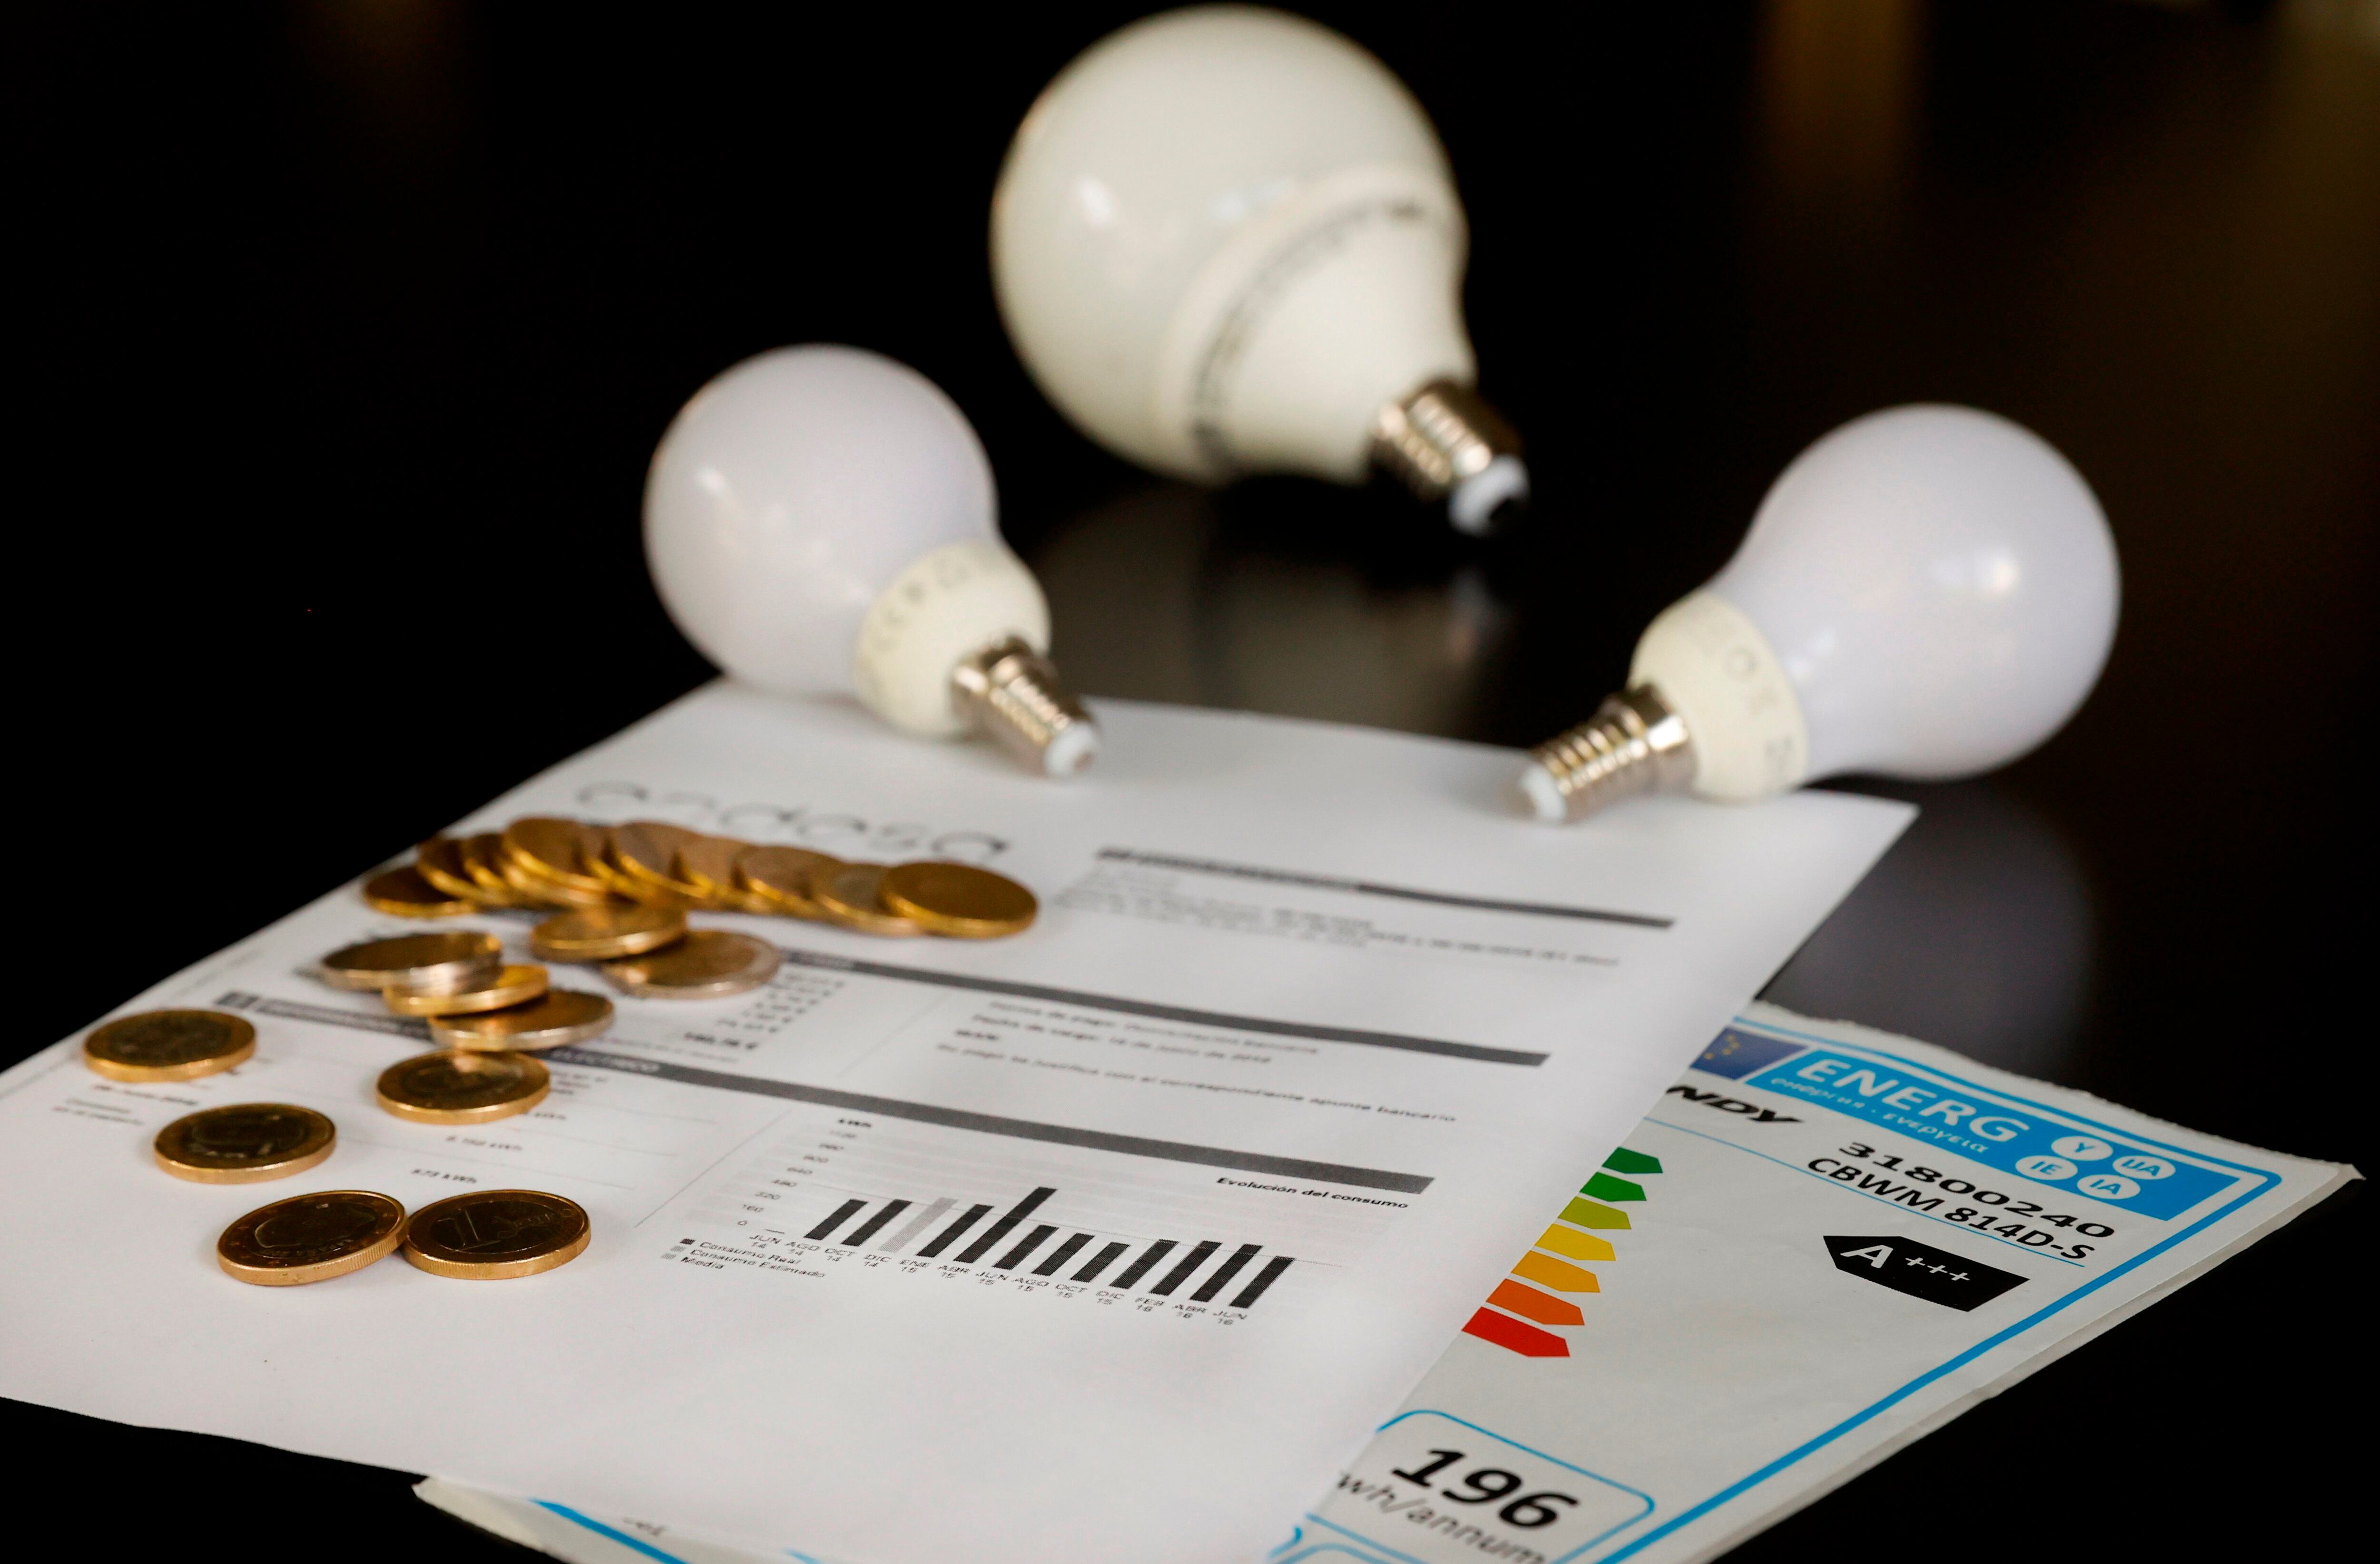 Varias bombillas sobre una factura de la luz, en una fotografía de archivo. EFE/JUAN CARLOS HIDALGO 